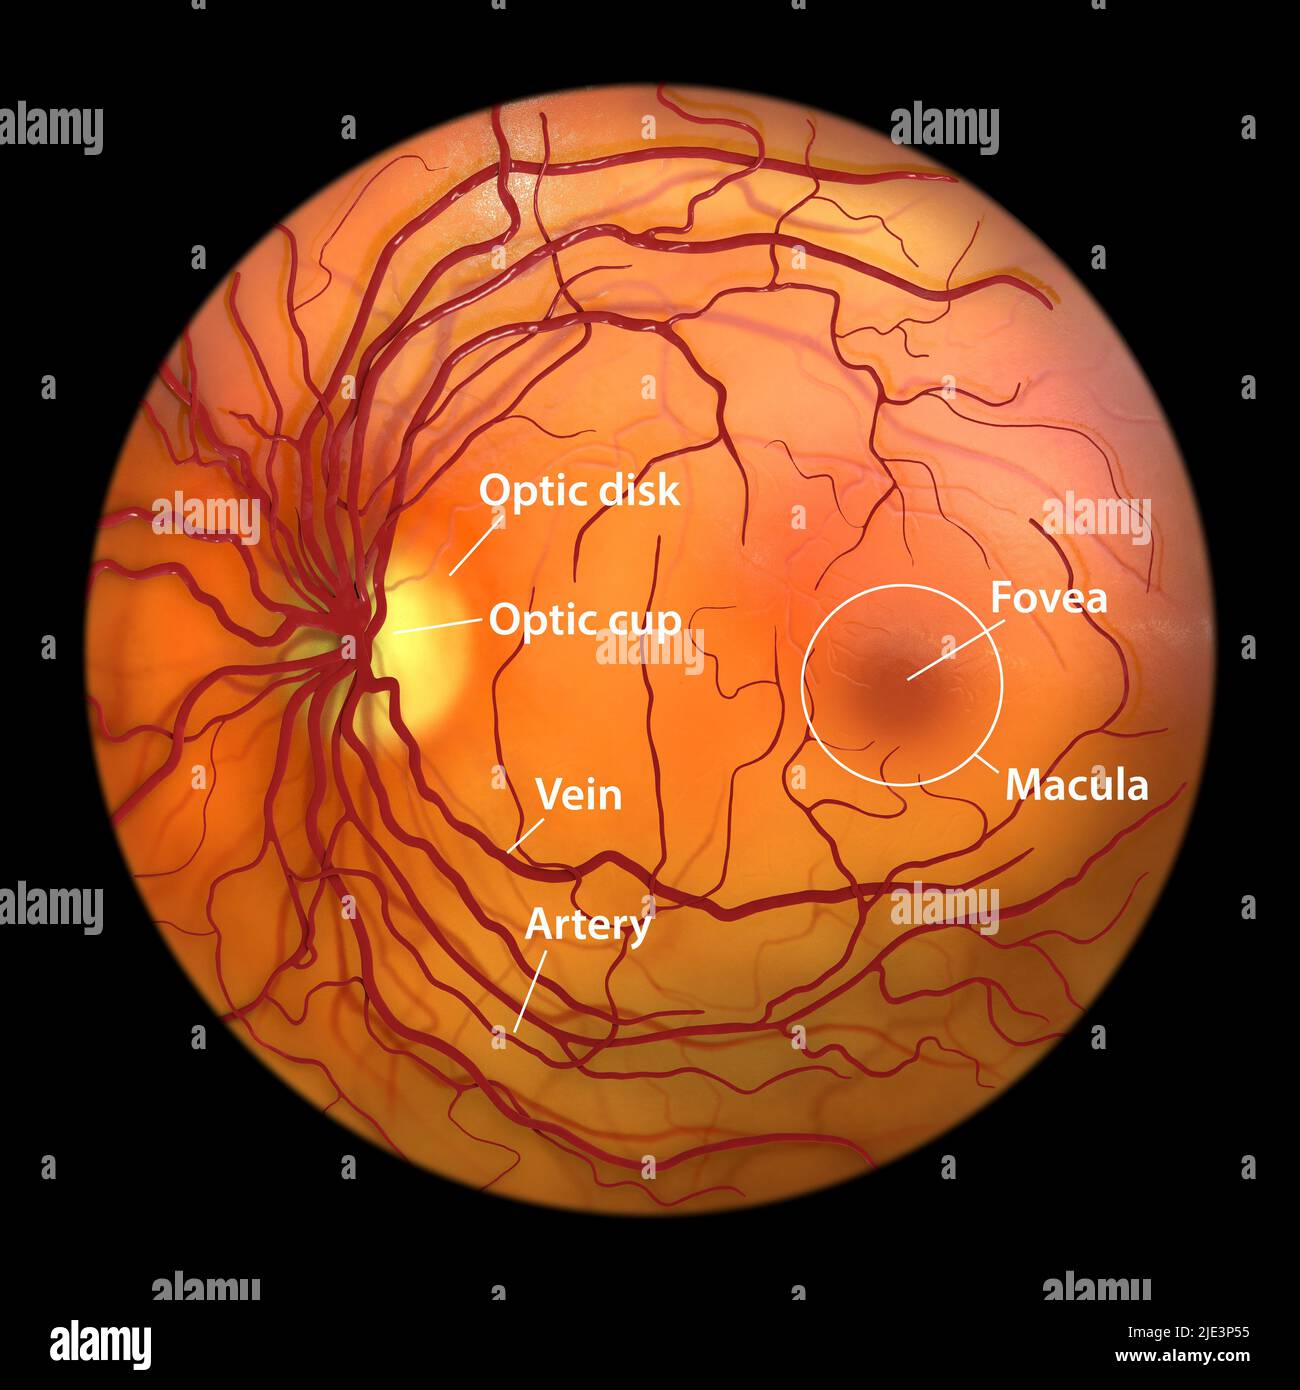 Rétine normale, image de l'ophtalmoscope, illustration. La rétine est la membrane sensible à la lumière qui ligne l'arrière de l'œil. Vaisseaux sanguins (rouge) radi Banque D'Images